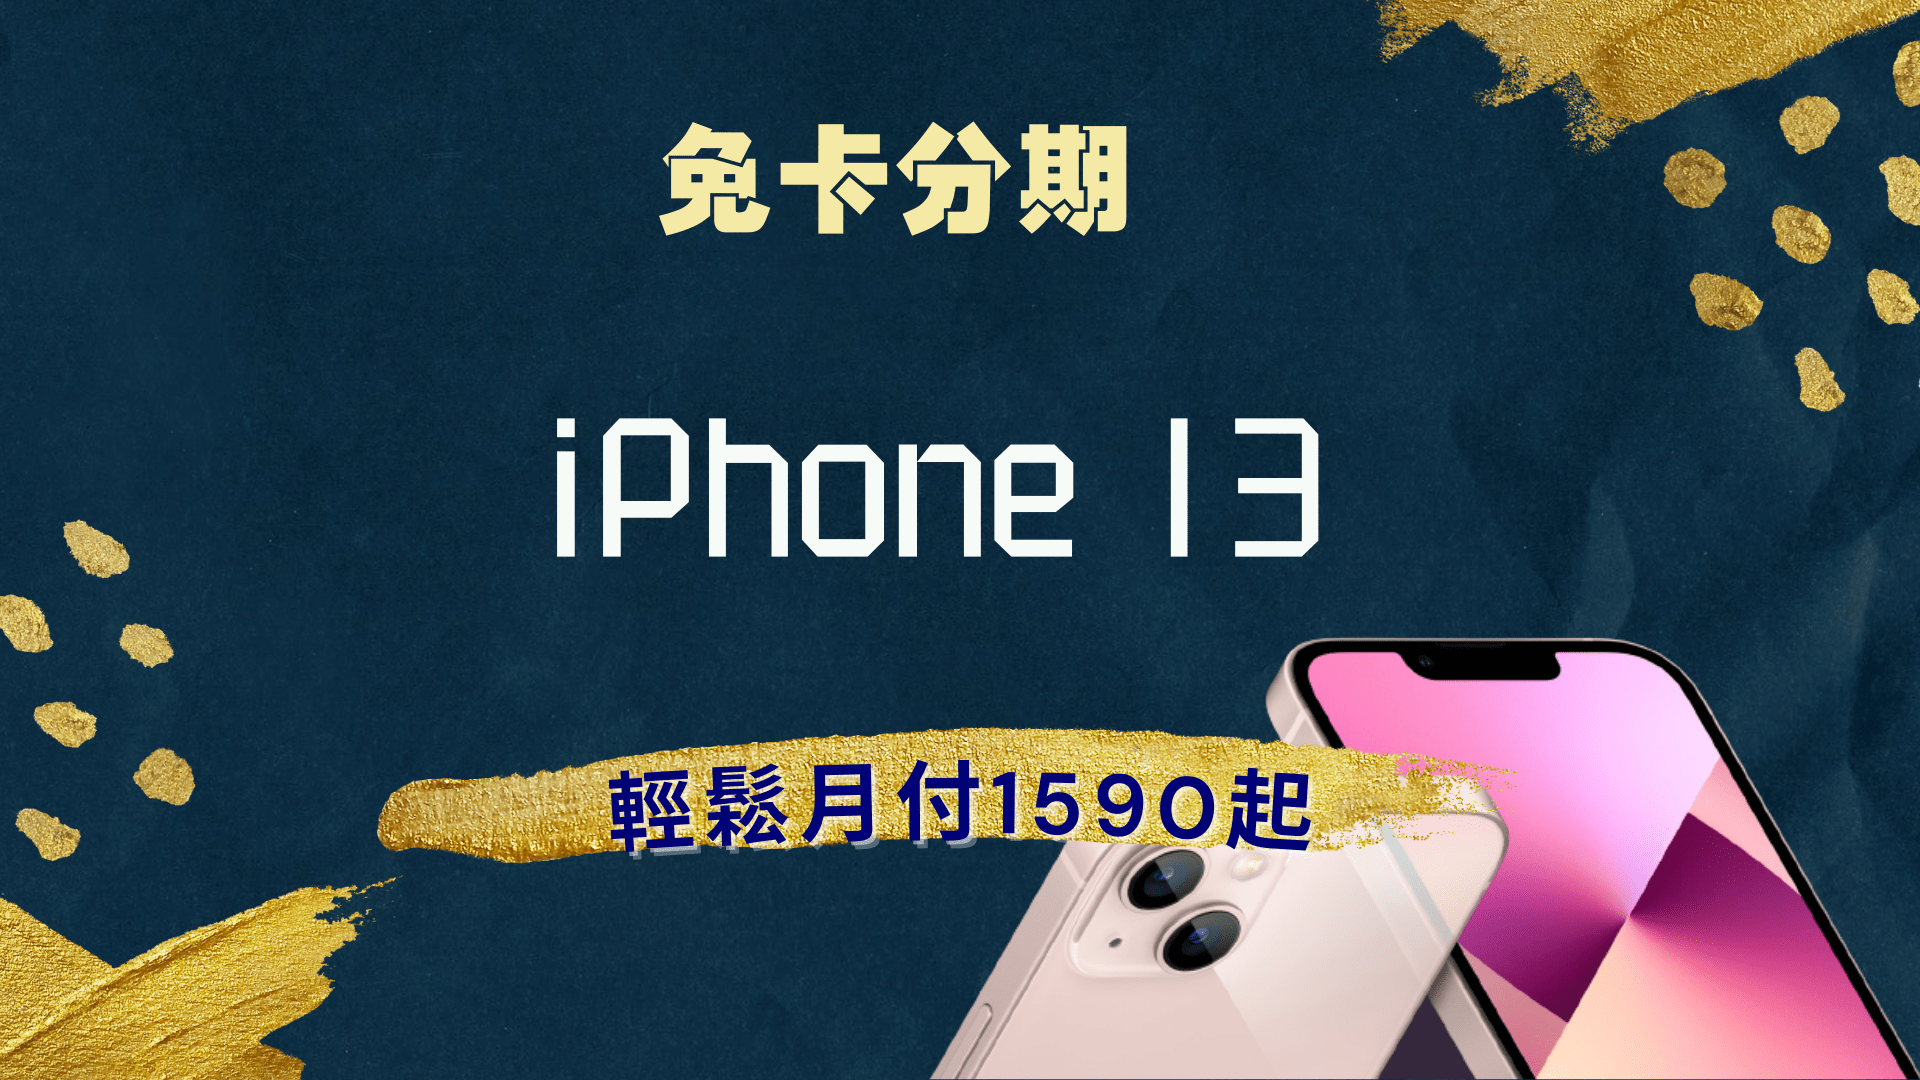 iphone 13 免卡分期